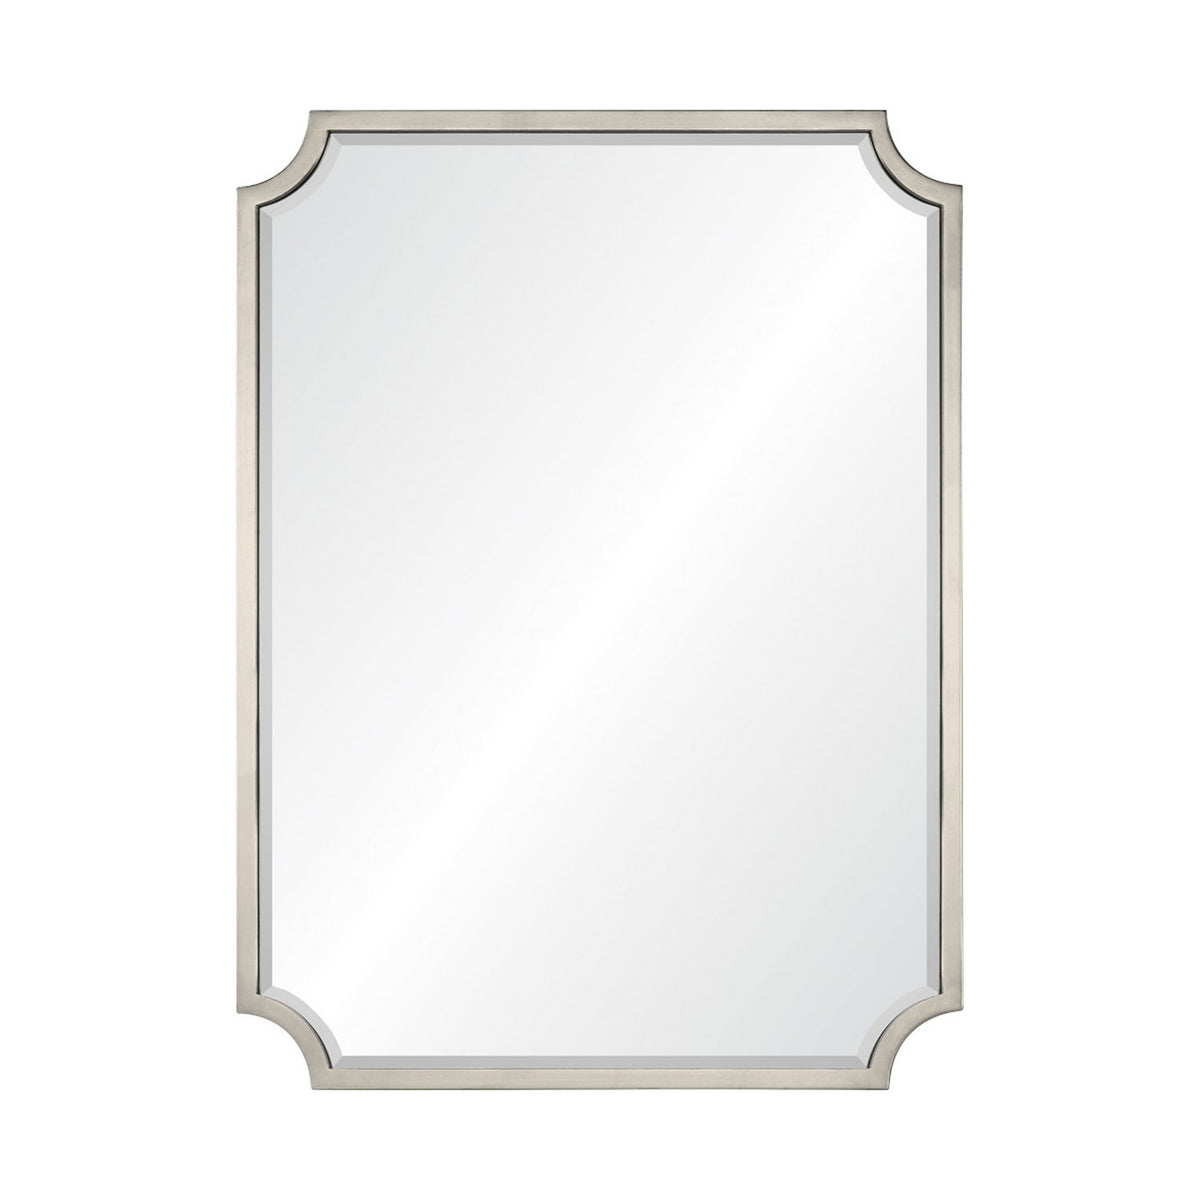 Thomas Mirror in Silver